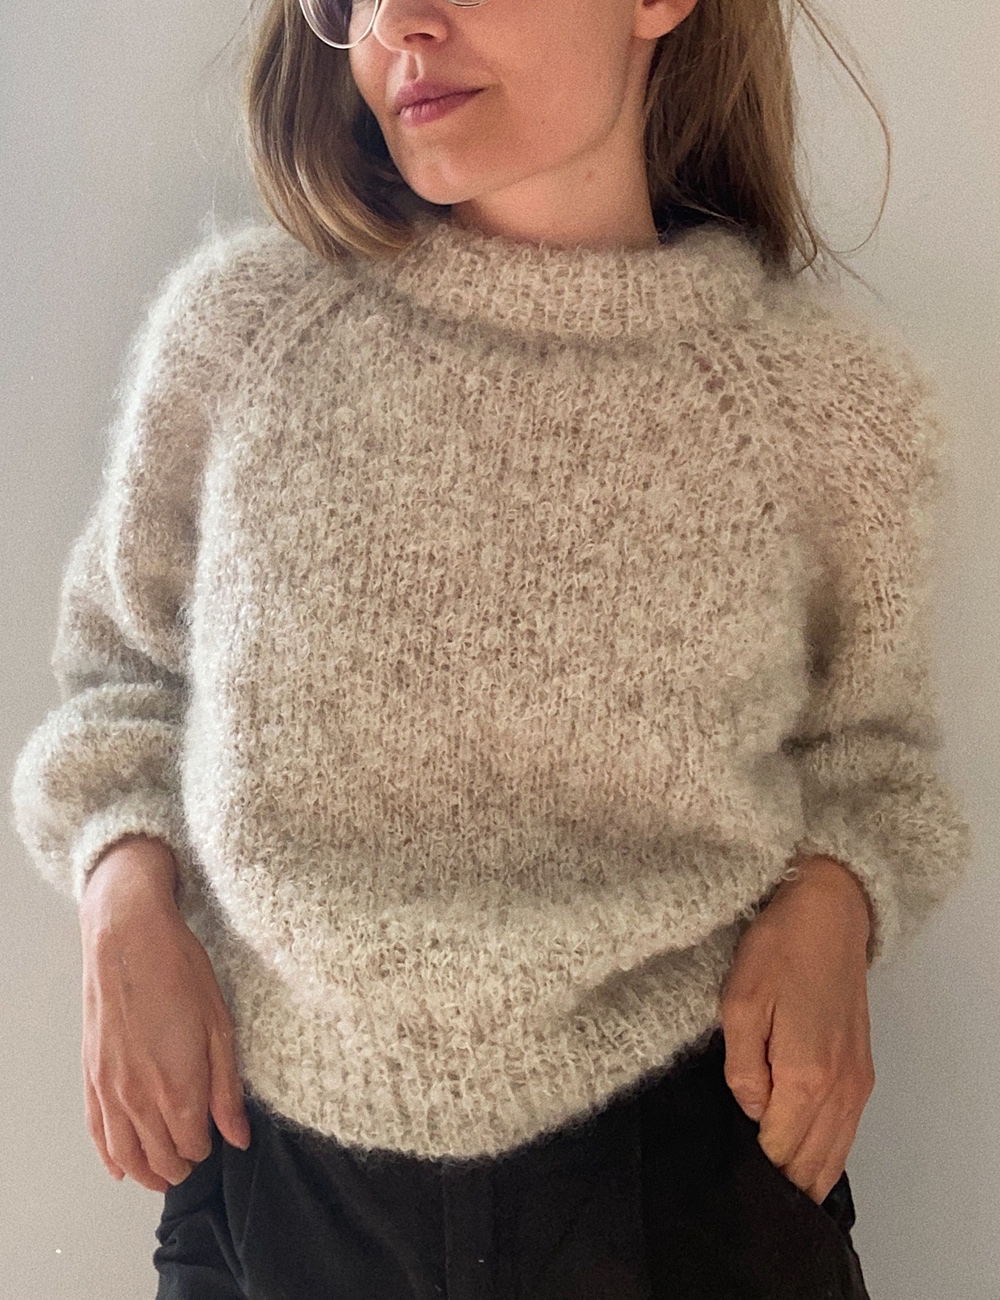 Boucle Sweater Pattern - leKnit - Lene Holme Samsoe - (UK)